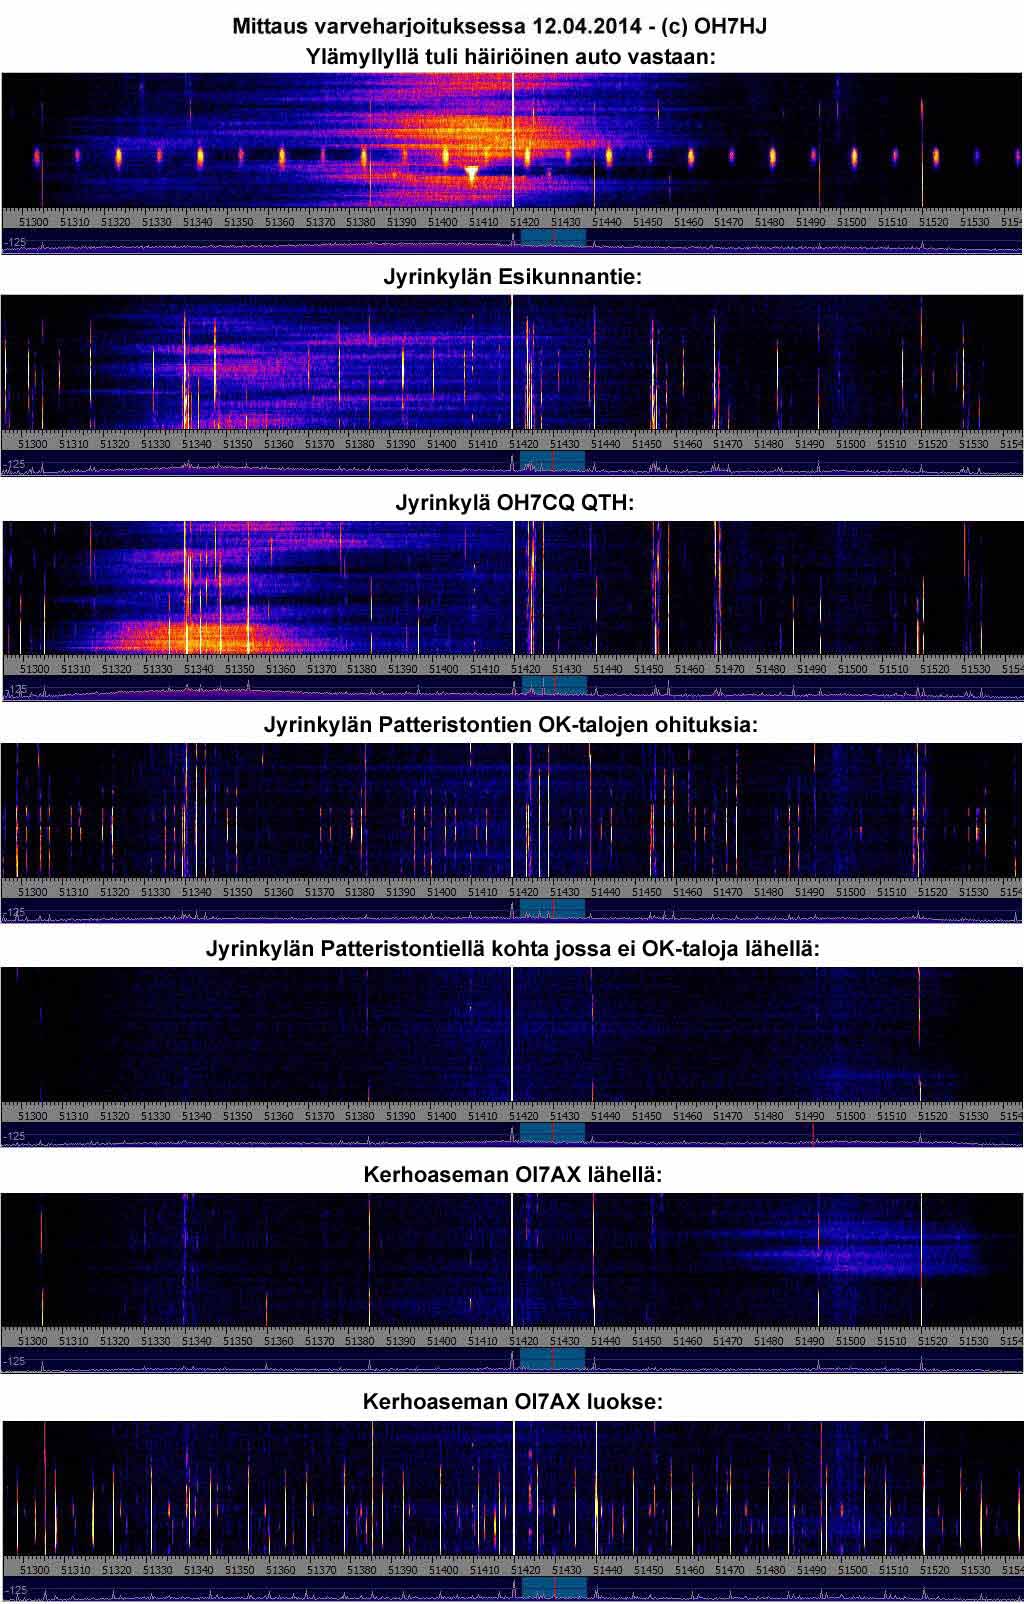 2014-04-12-3 - 51.430 MHz häiriöspektrimittaus vertikaaliantennilla autosta välillä Kontiolahti - Jyrinkylä (c) OH7HJ.jpg